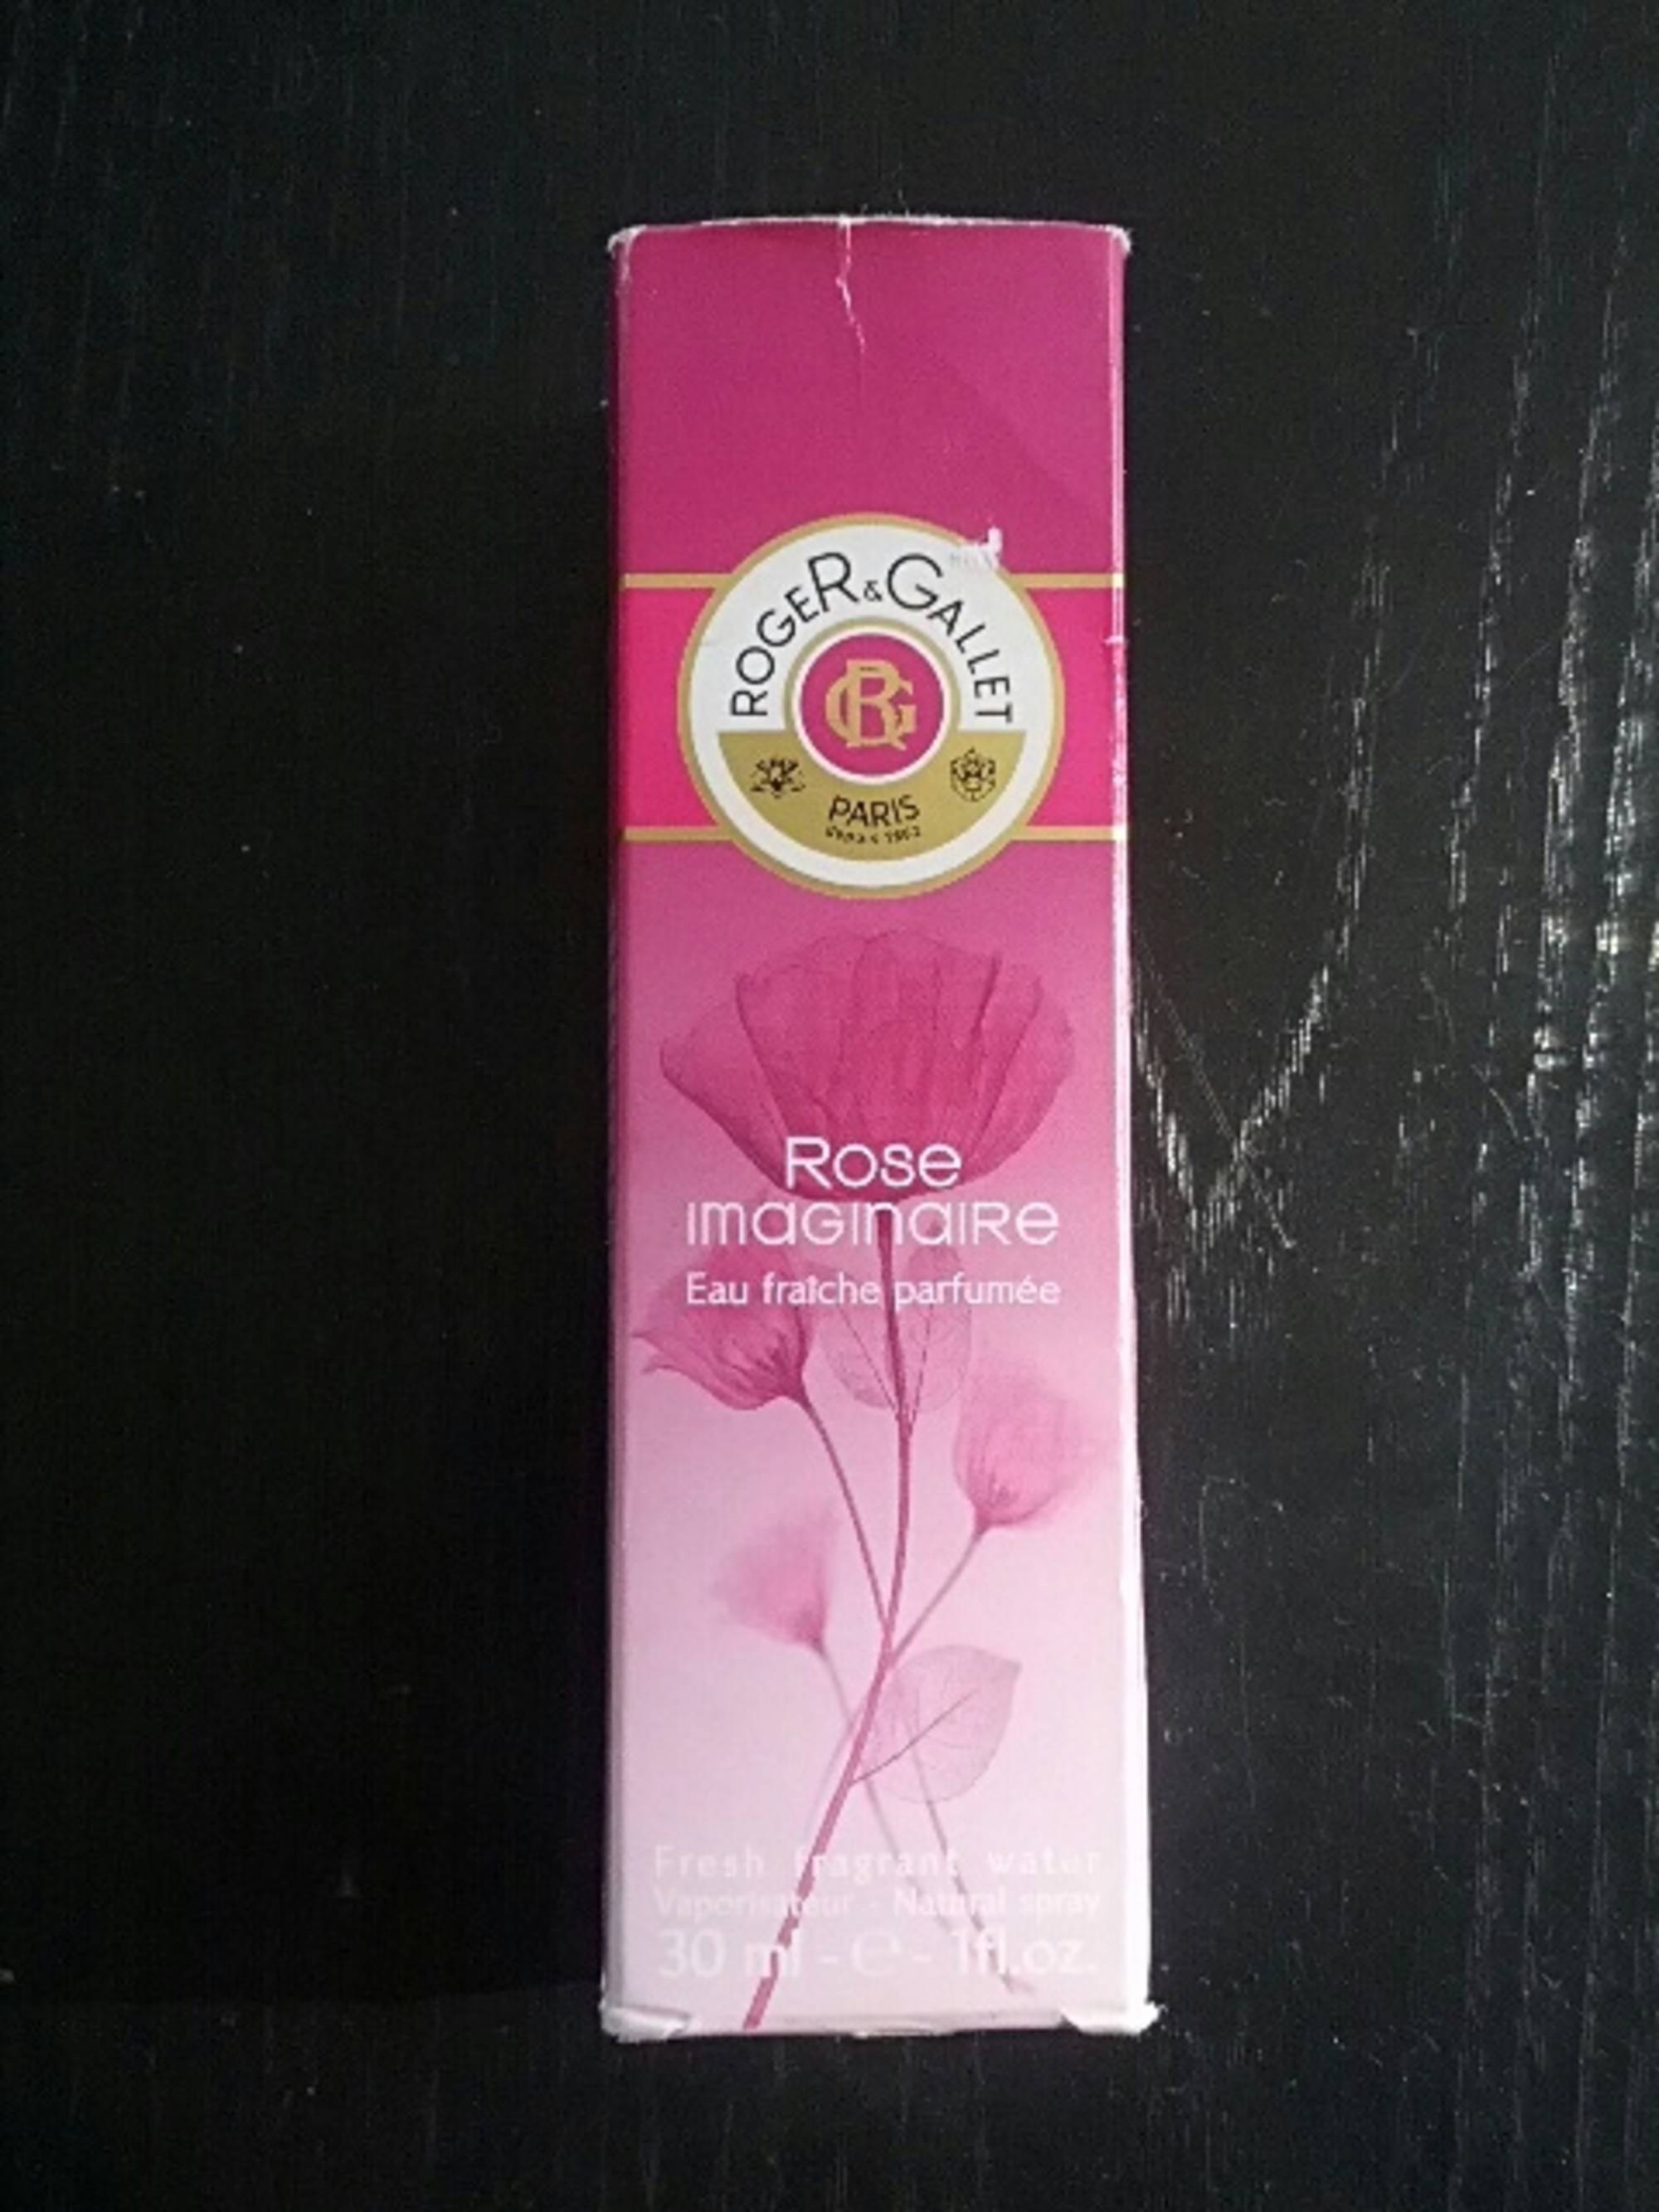 ROGER & GALLET - Rose imaginaire - Eau fraîche parfumée